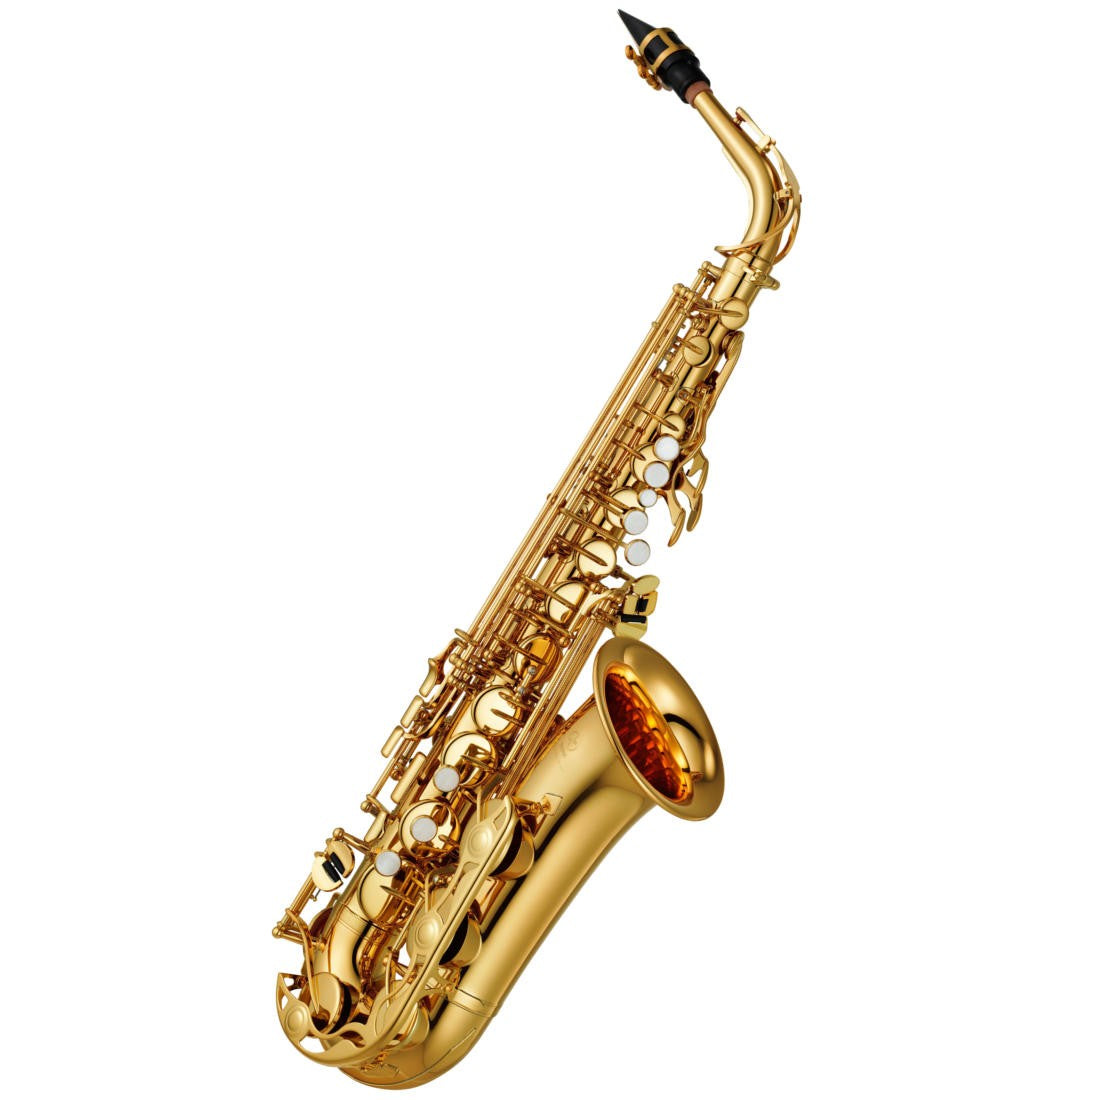 Wilson, Ian - I Sleep at Waking - solo alto saxophone